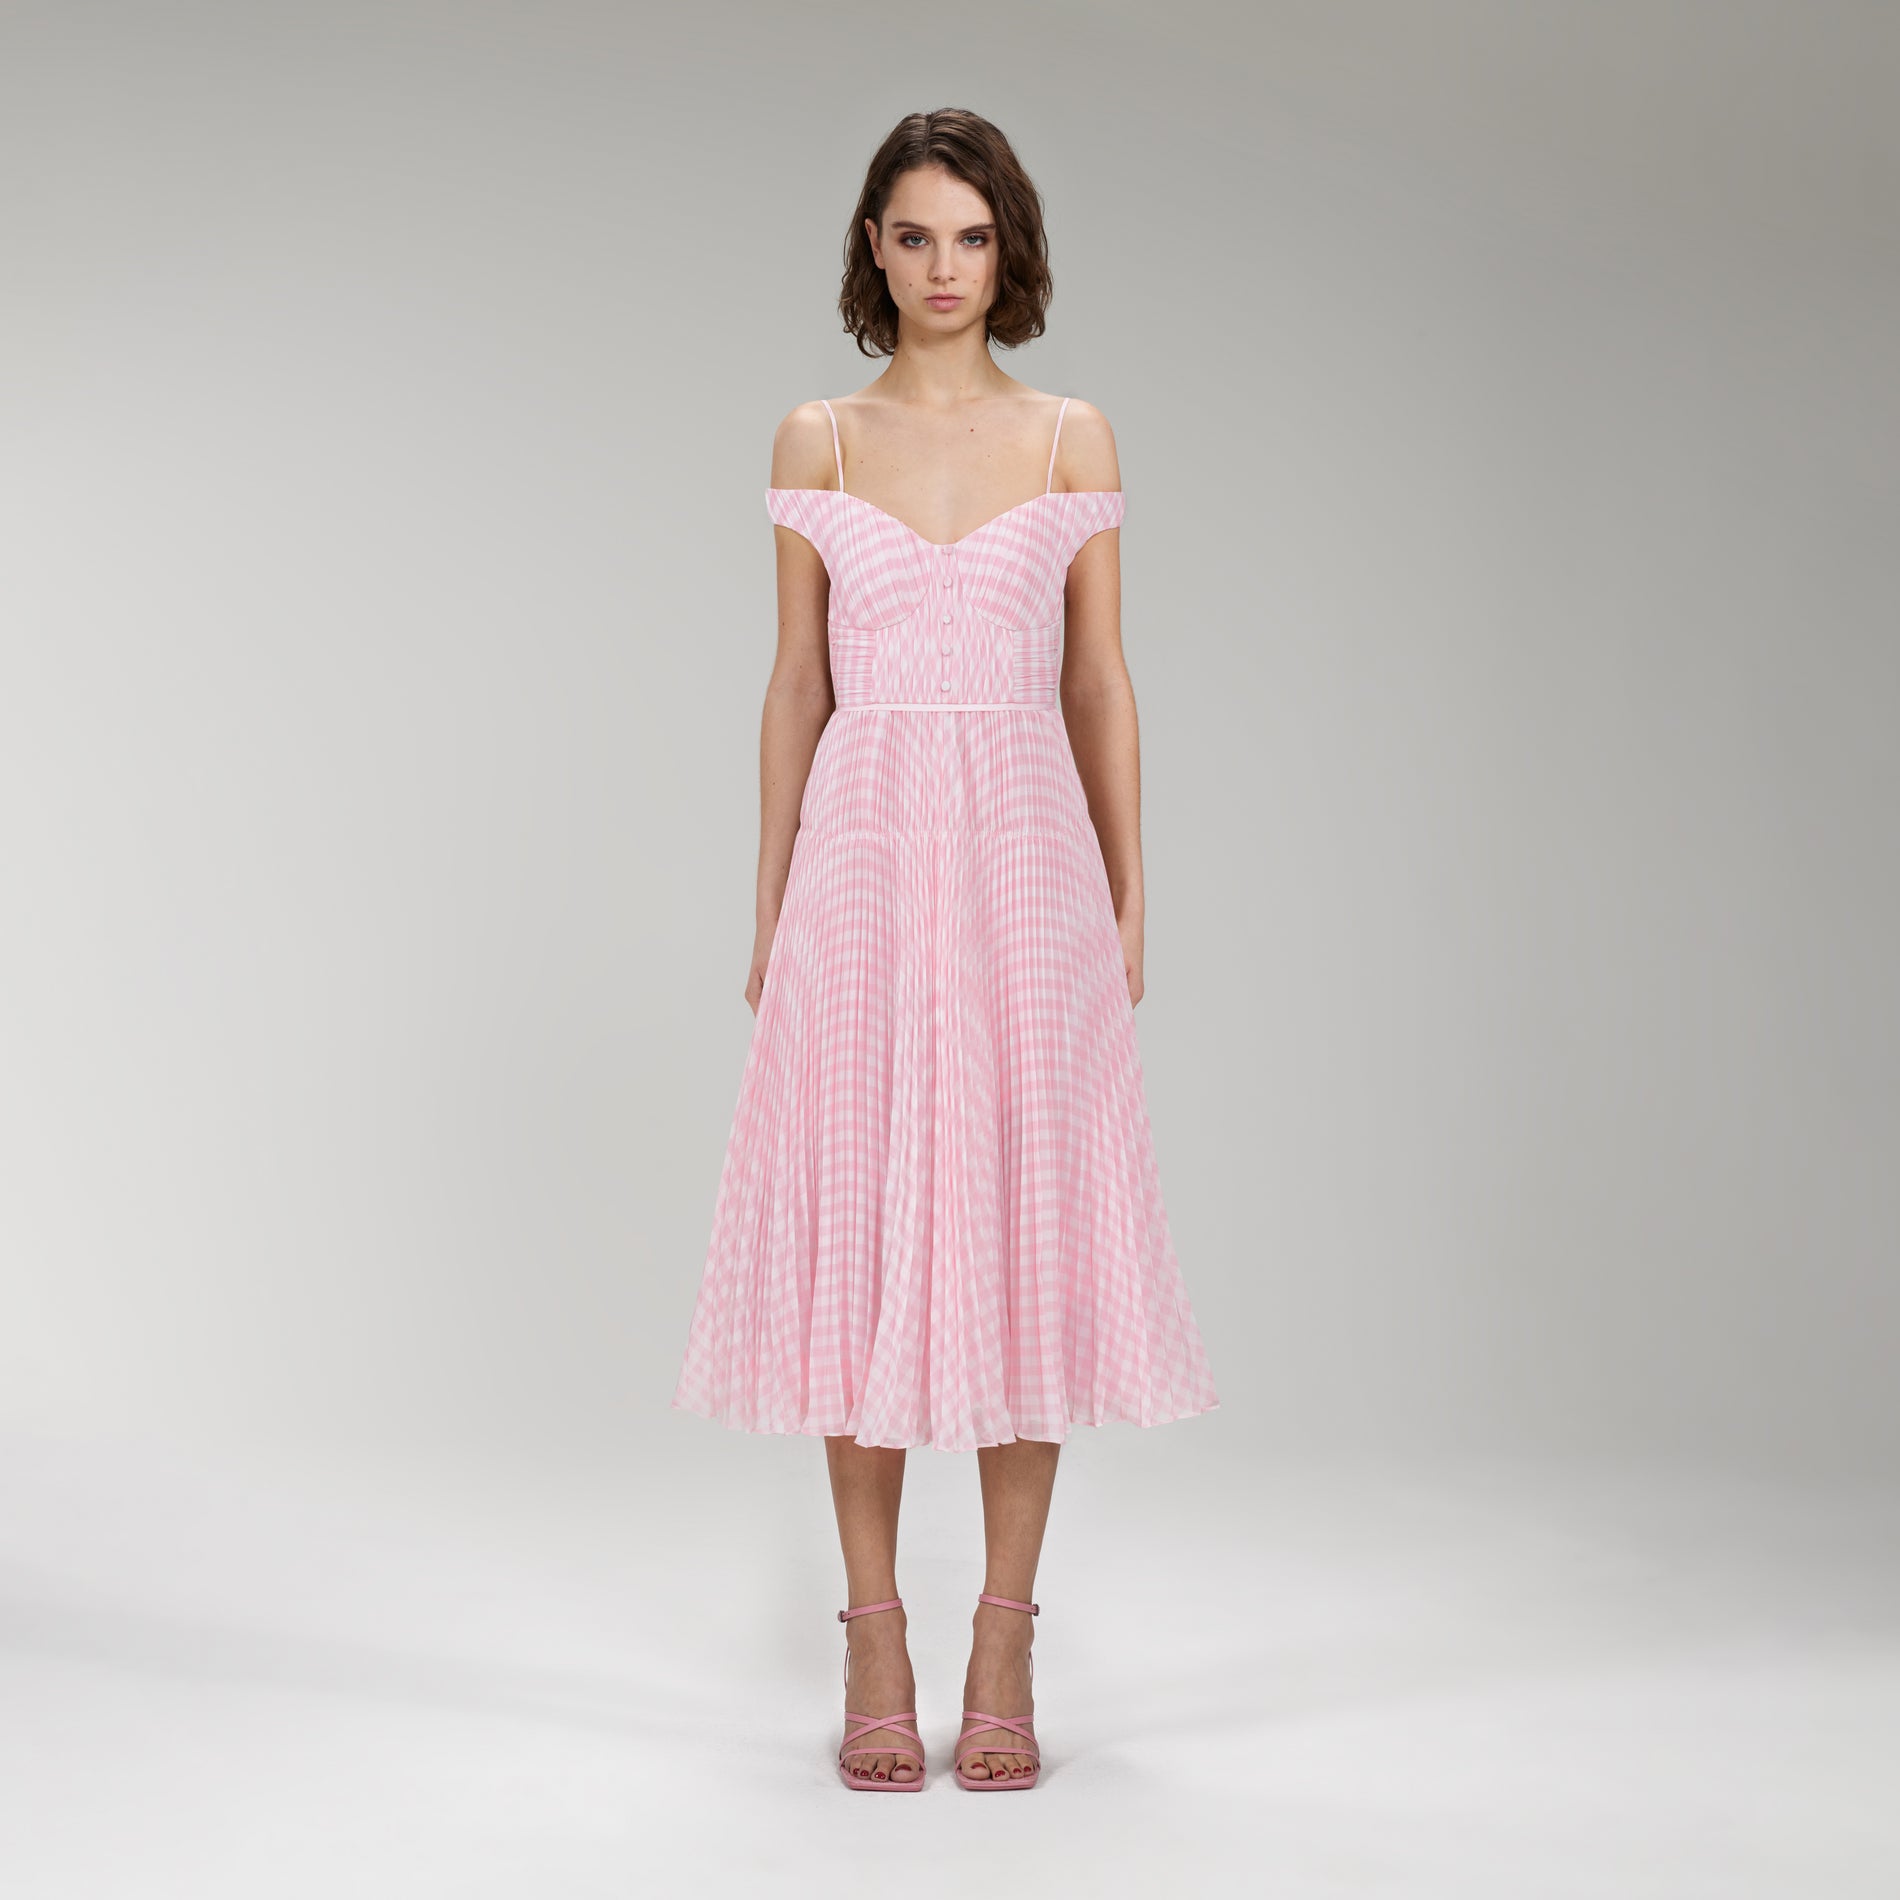 A woman wearing the Pink Gingham Print Chiffon Midi Dress